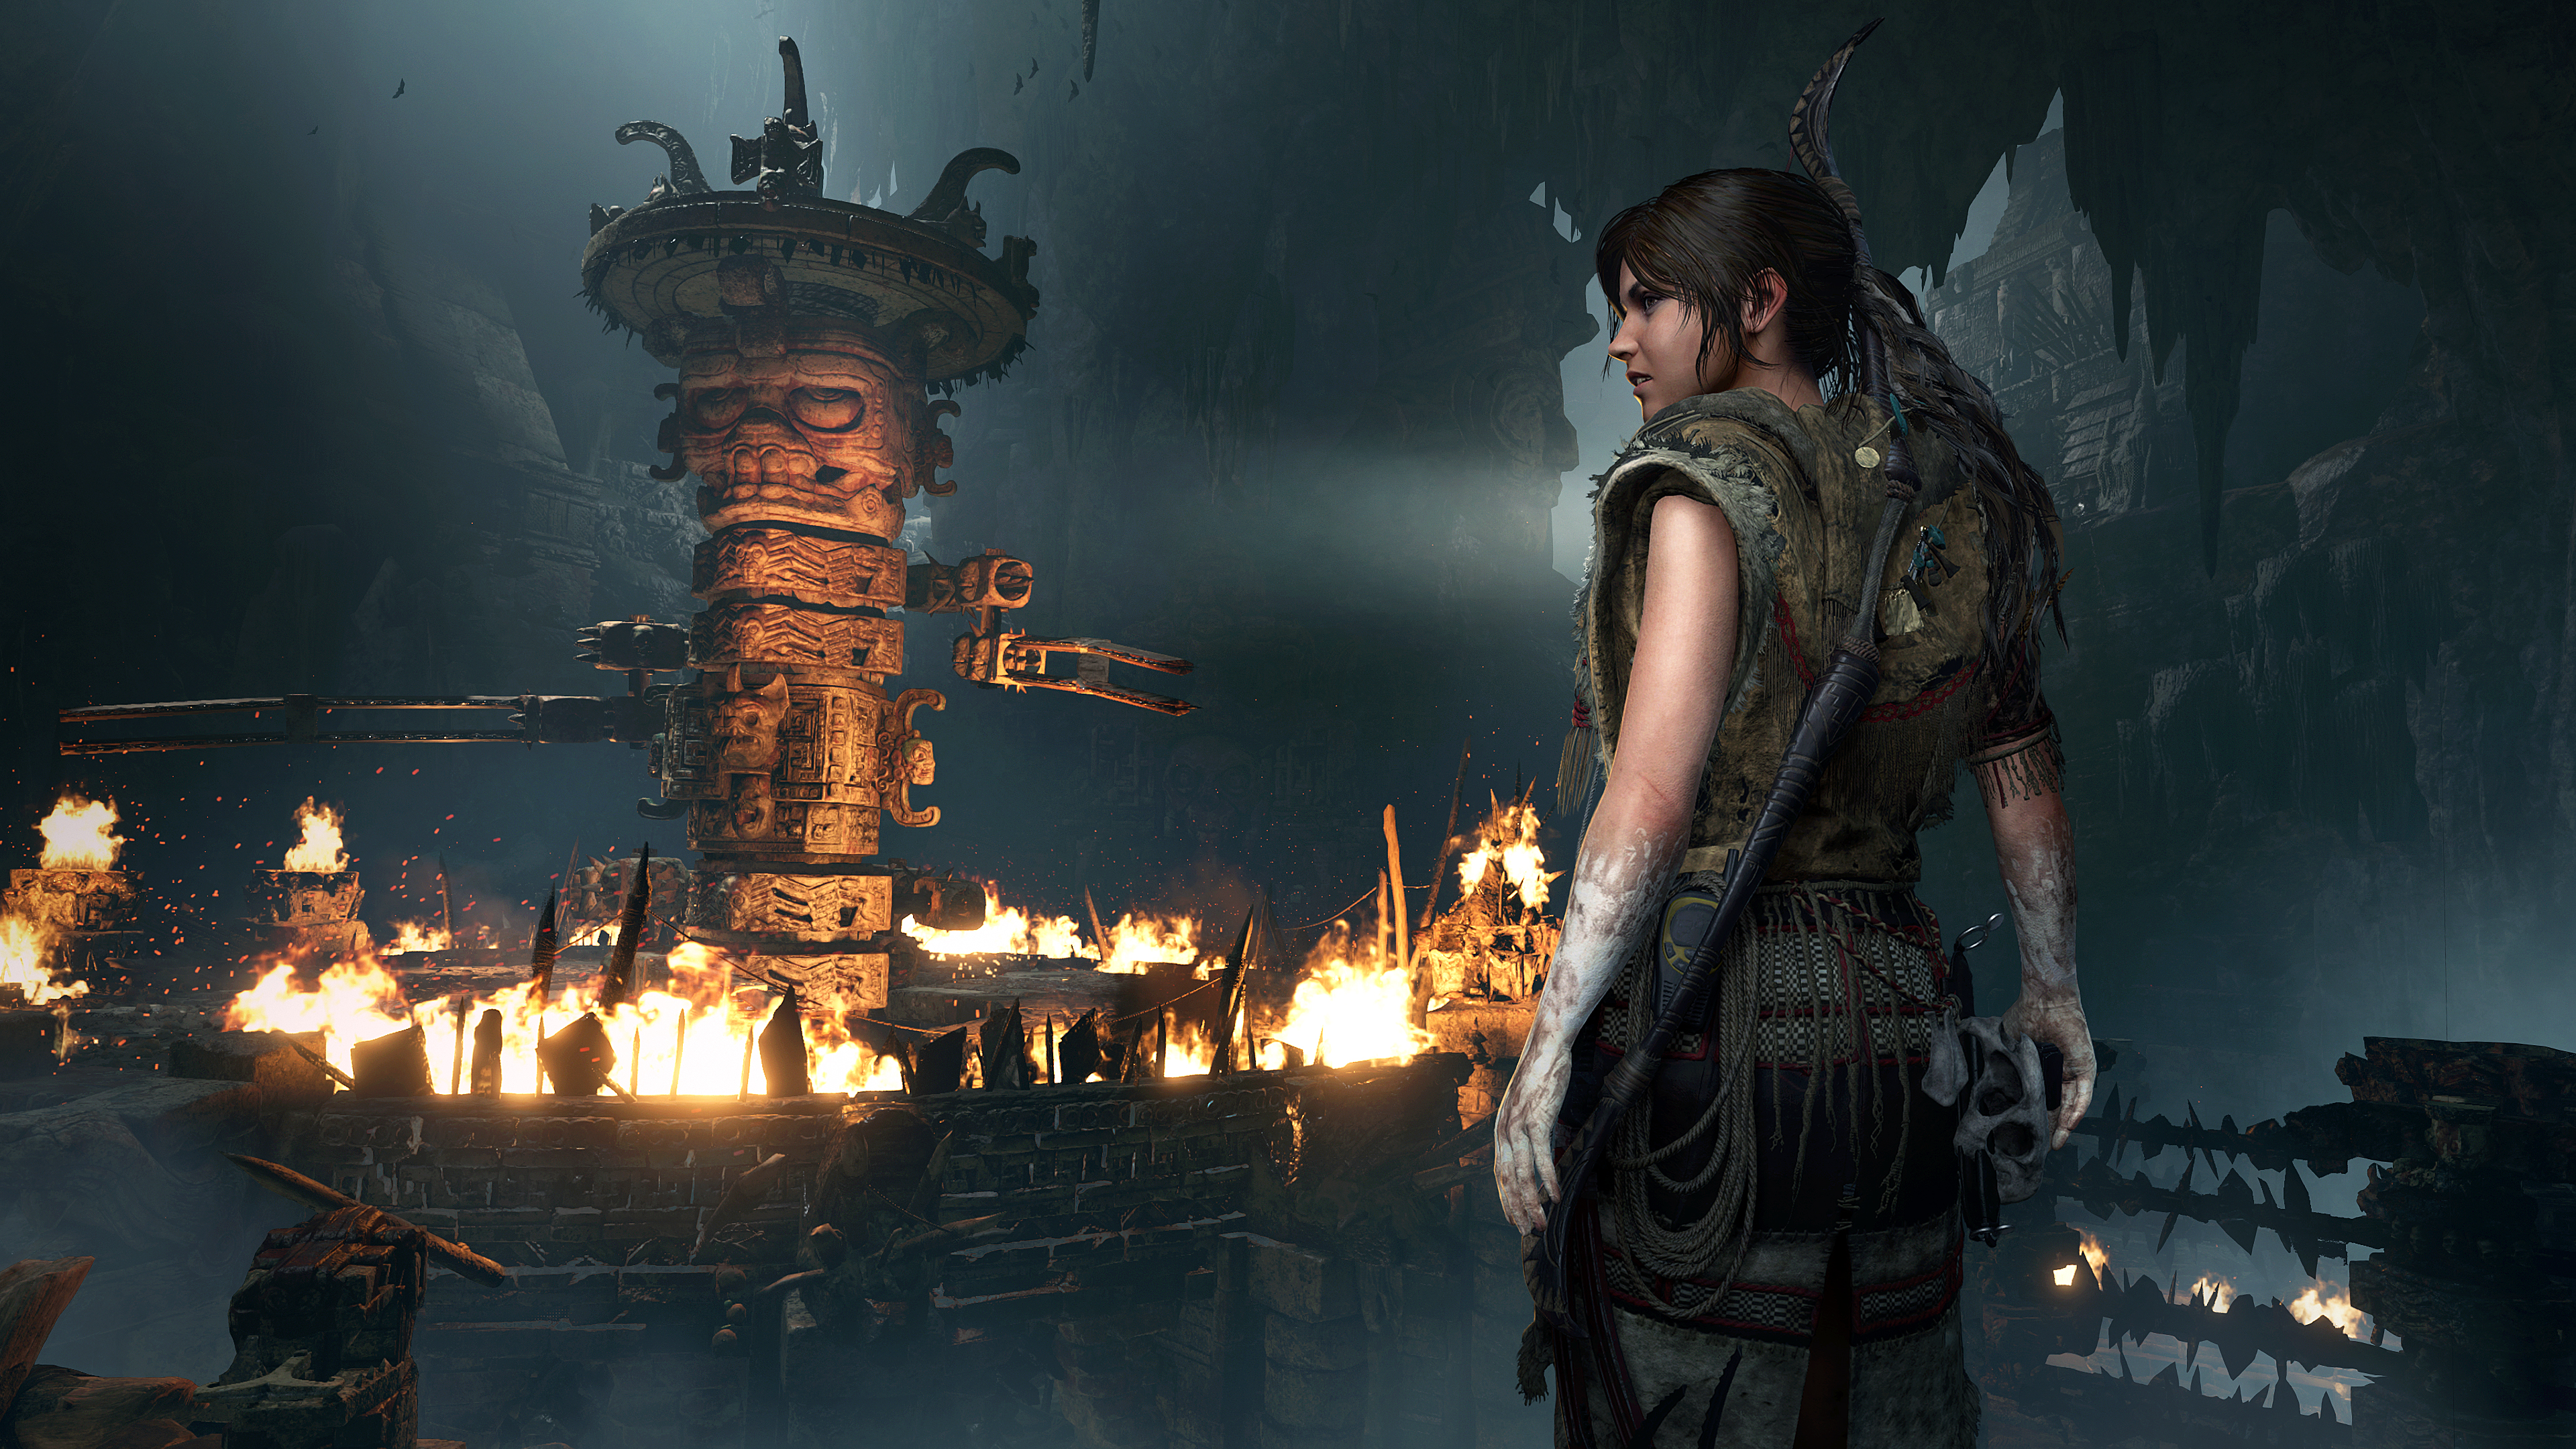 Immagine pubblicata in relazione al seguente contenuto: Nuovi gameplay trailers e screenshots del game Shadow of the Tomb Raider | Nome immagine: news28511_Shadow-of-the-Tomb-Raider-Screenshot_4.jpg